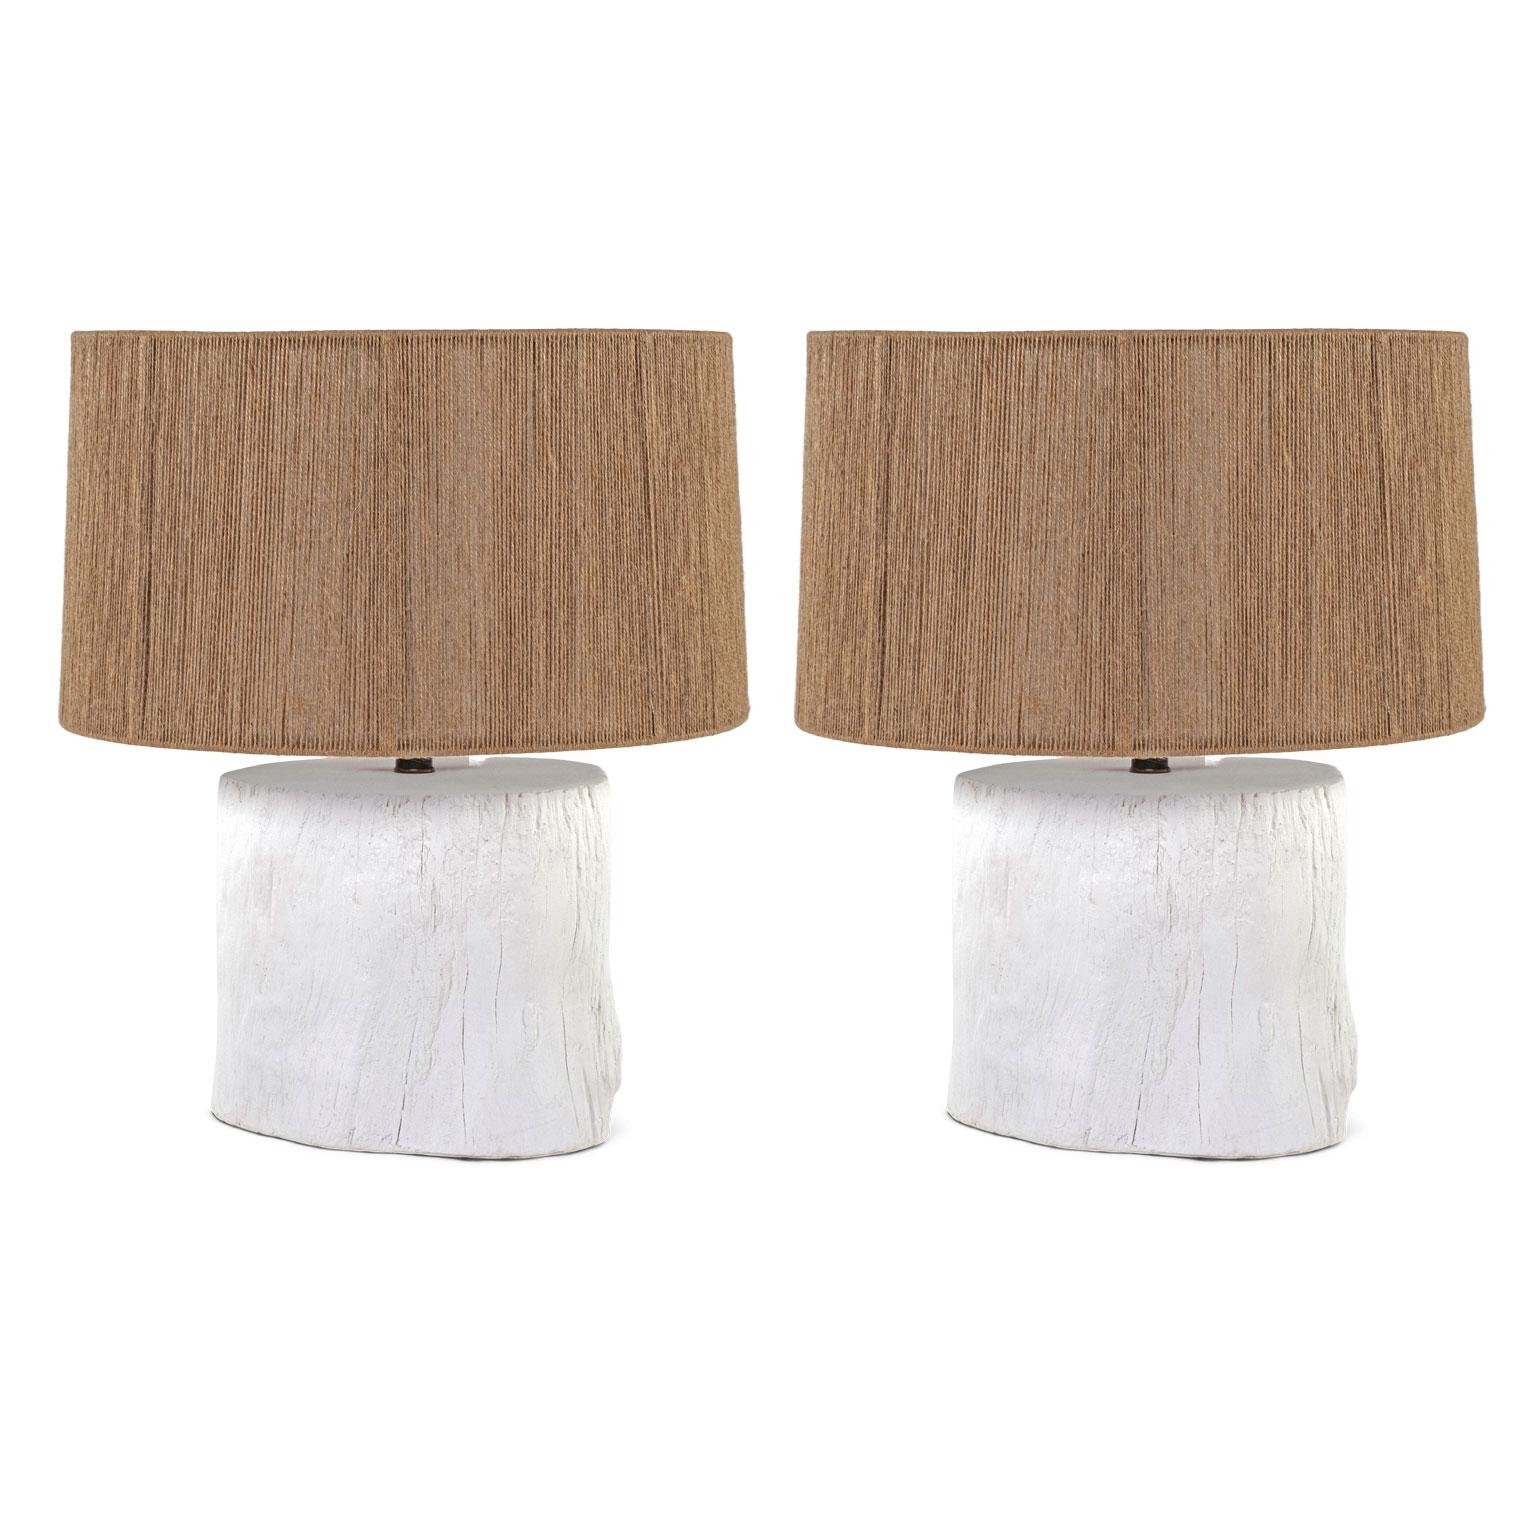 Lampe en plâtre blanc Faux bois 'Tree Stump', par Liz Marsh. Lampe en plâtre blanc de style faux bois, fabriquée par un artiste, câblée pour être utilisée aux États-Unis avec des pièces approuvées par UL. Convient aux ampoules de taille moyenne.